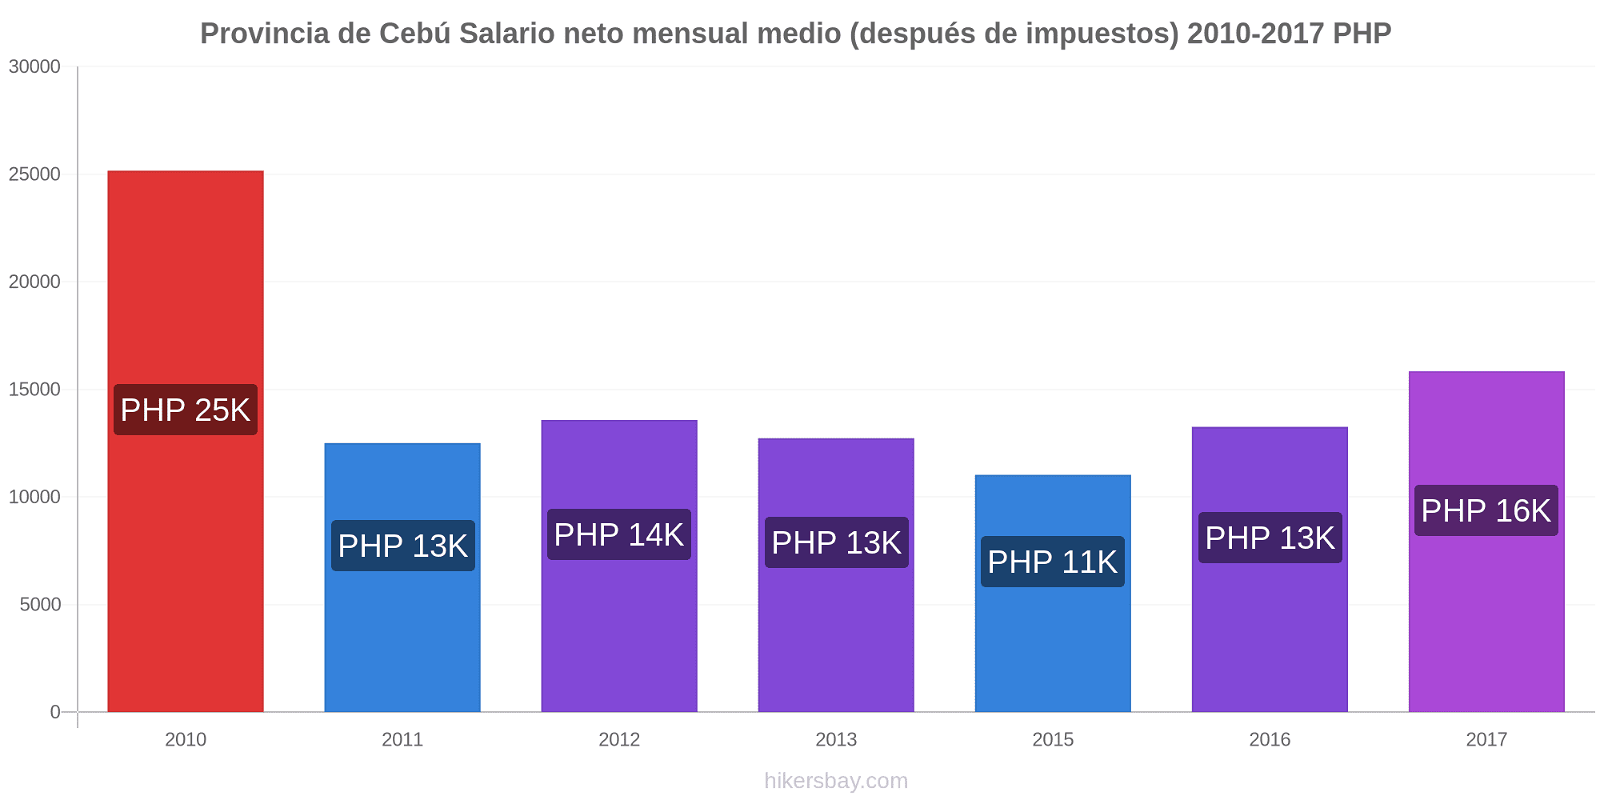 Provincia de Cebú cambios de precios Promedio mensual del salario neto (después de pagar impuestos) hikersbay.com